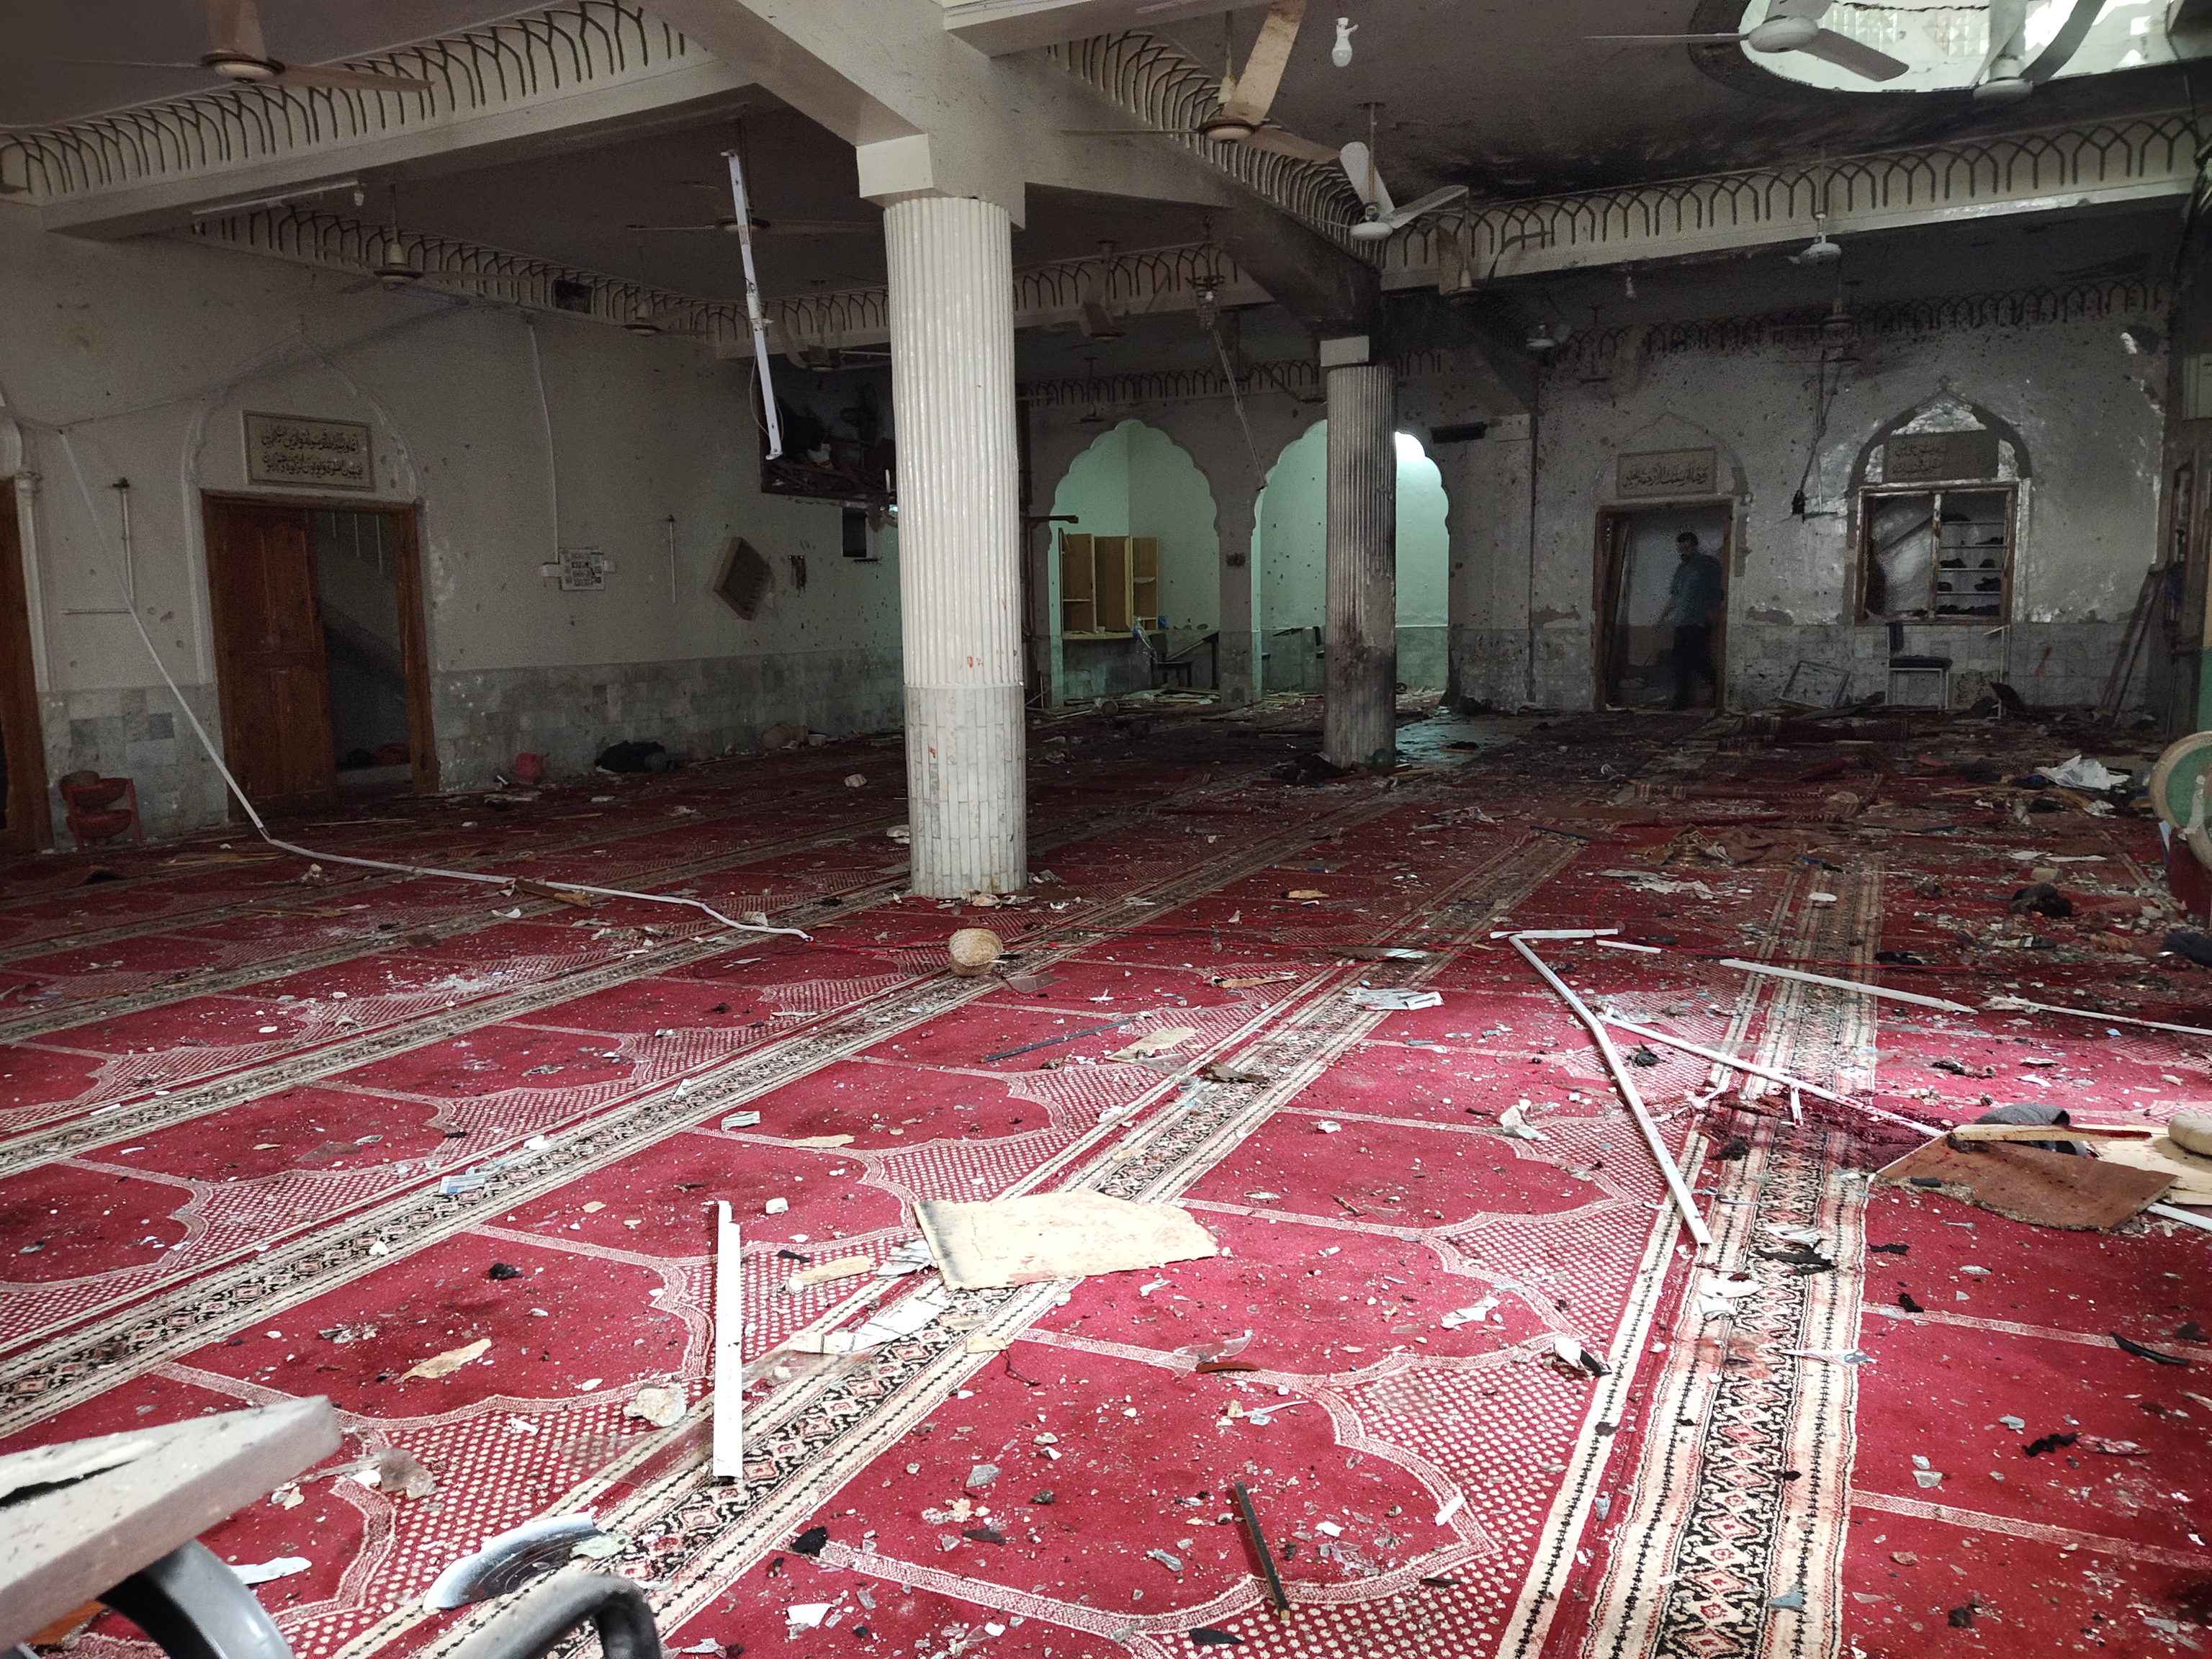 Vista de los daos causados tras la explosin de una bomba en una mezquita de musulmanes chies en Peshawar, Pakistn, el 4 de marzo de 2022. Al menos 5 personas murieron y decenas resultaron heridas al estallar una bomba durante la oracin del viernes en una mezquita de musulmanes chies en Peshawar. Pakistn, el 4 de marzo de 2022. Al menos 5 personas murieron y decenas resultaron heridas al estallar una bomba durante la oracin del viernes en una mezquita de musulmanes chies en Peshawar.